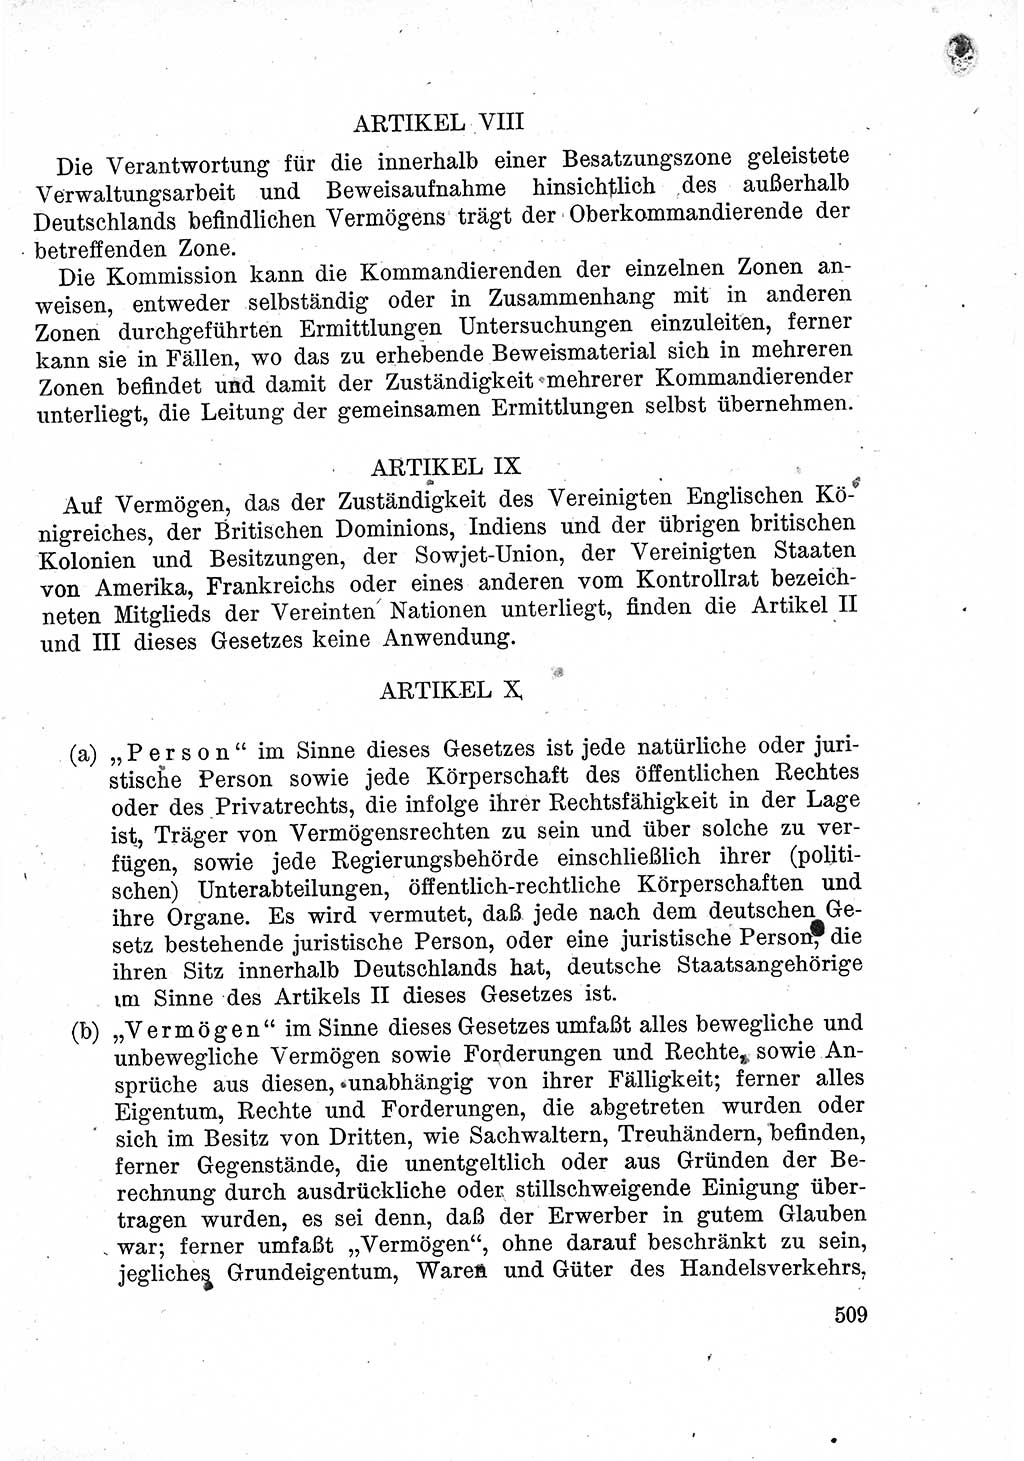 Das Recht der Besatzungsmacht (Deutschland), Proklamationen, Deklerationen, Verordnungen, Gesetze und Bekanntmachungen 1947, Seite 509 (R. Bes. Dtl. 1947, S. 509)